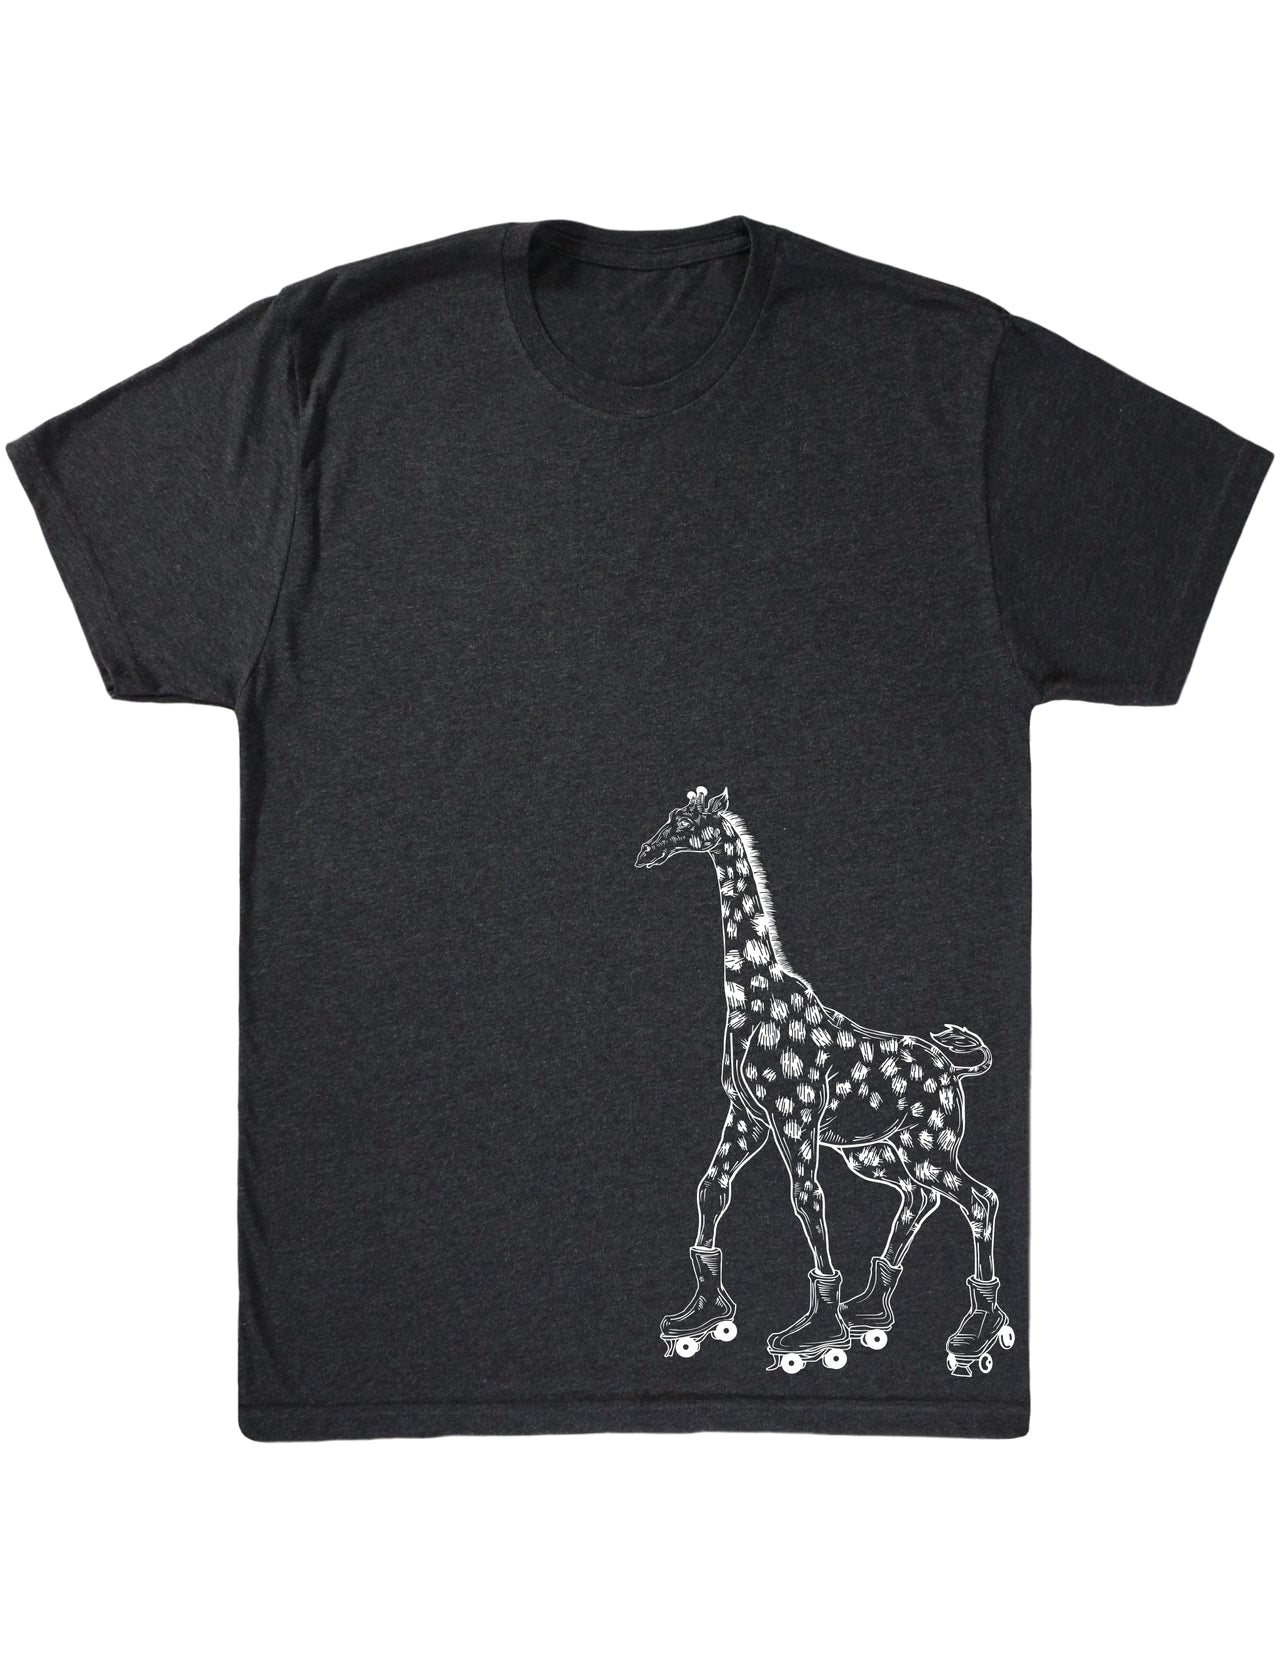 seembo-giraffe-roller-skater-skating-art-men-vintage-black-t-shirt-side-printed